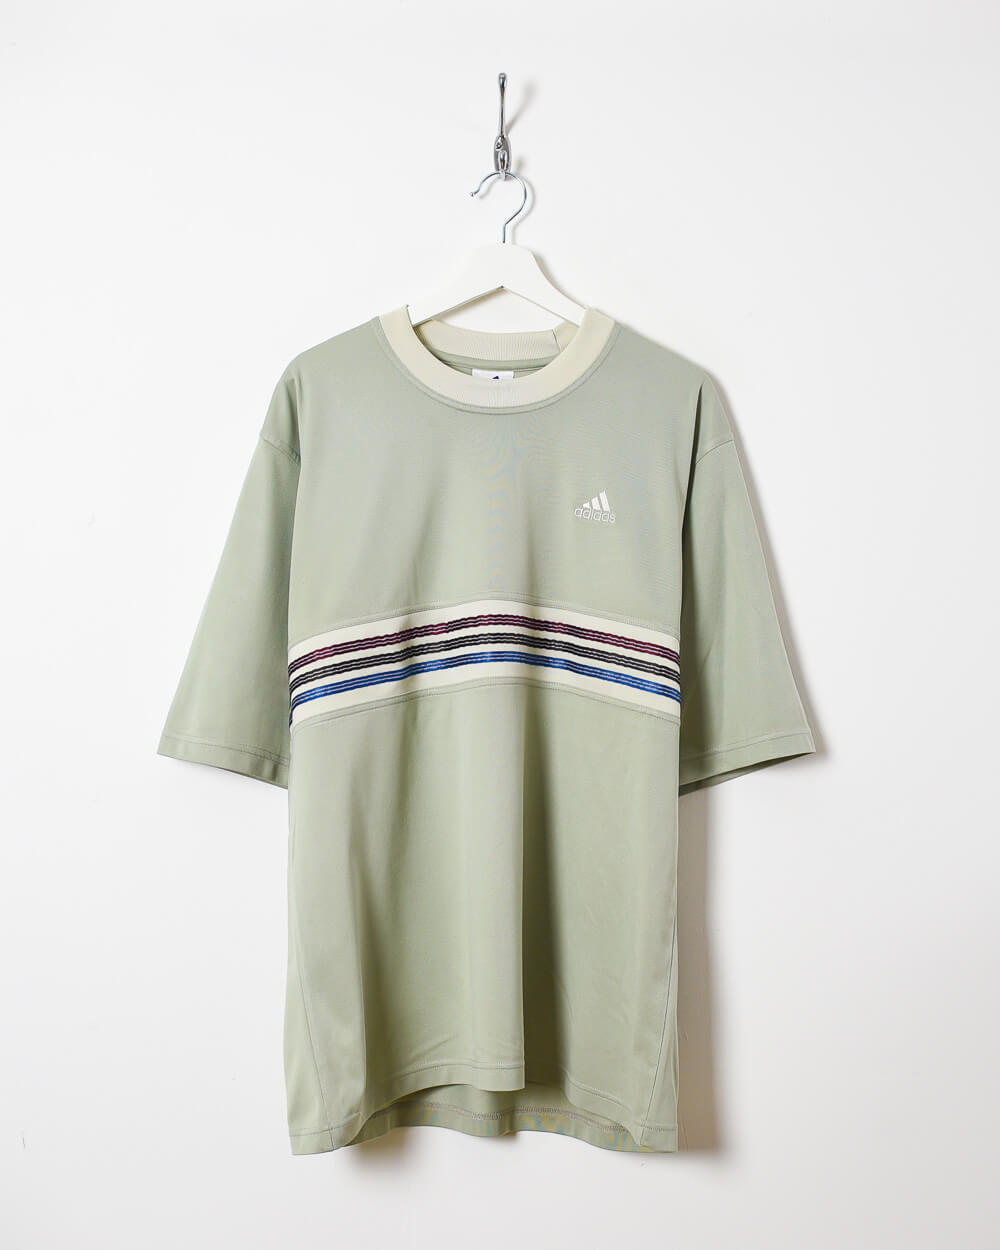 Khaki Adidas T-Shirt - XX-Large